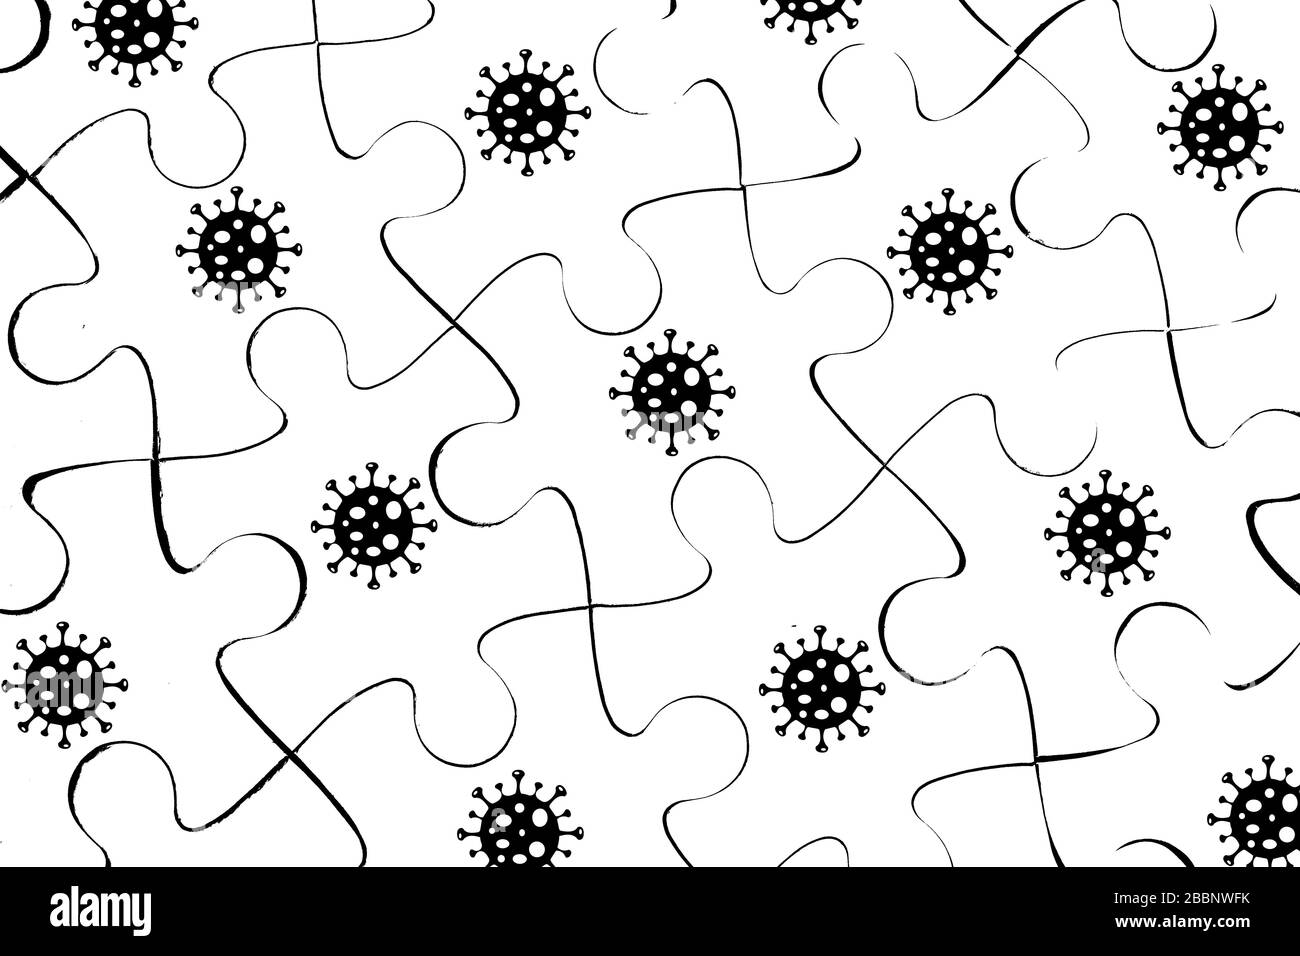 Corona virus pandemie puzzle background Stock Photo